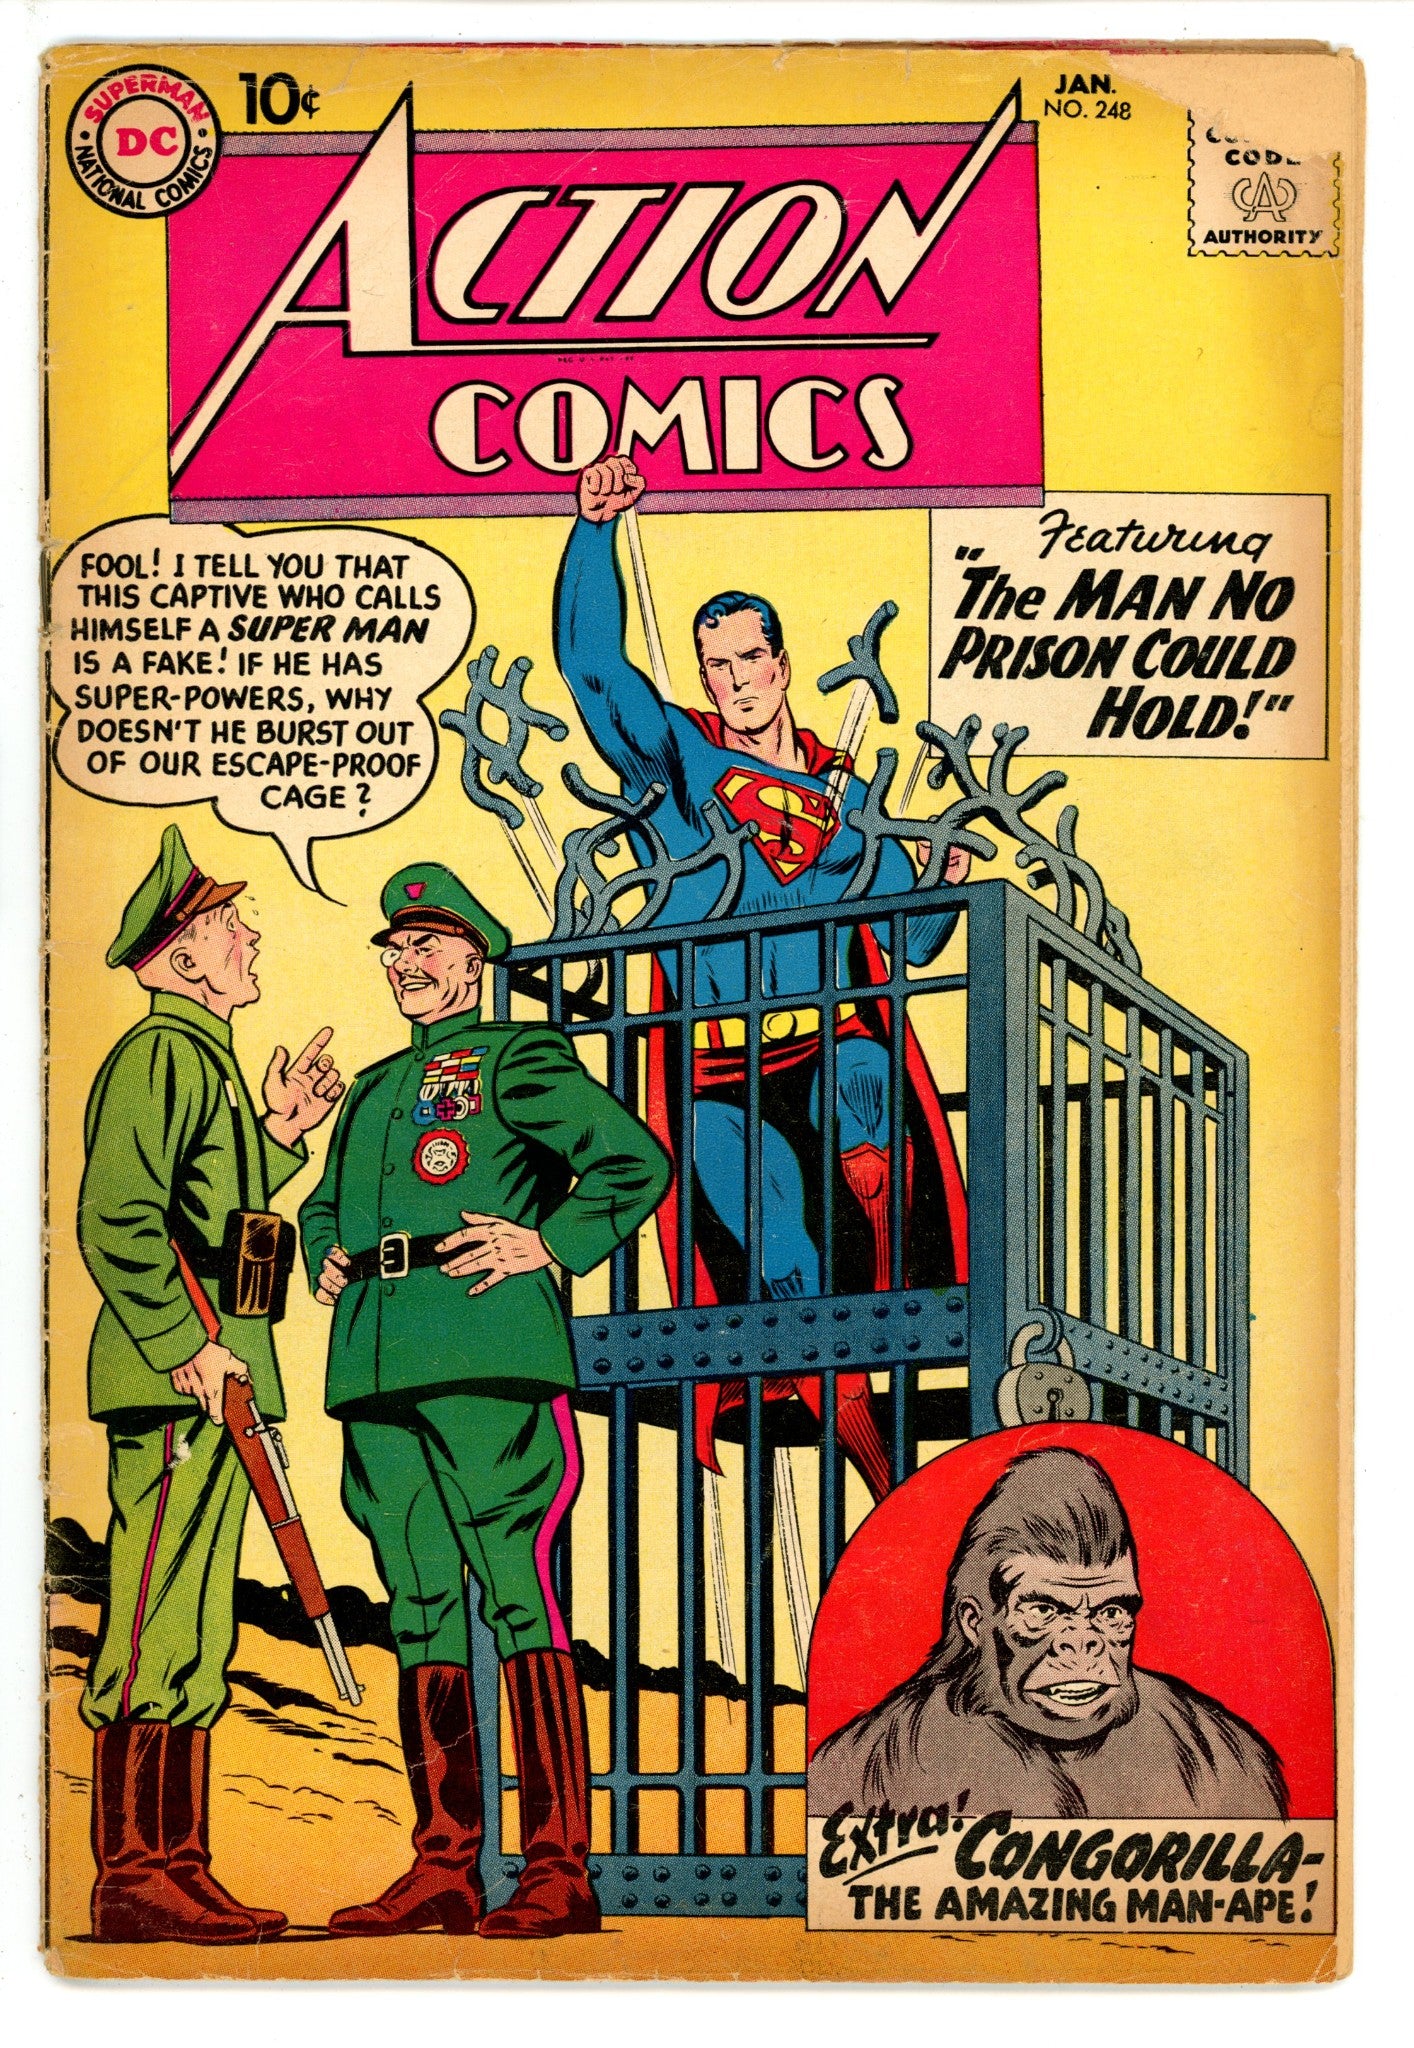 Action Comics Vol 1 248 GD